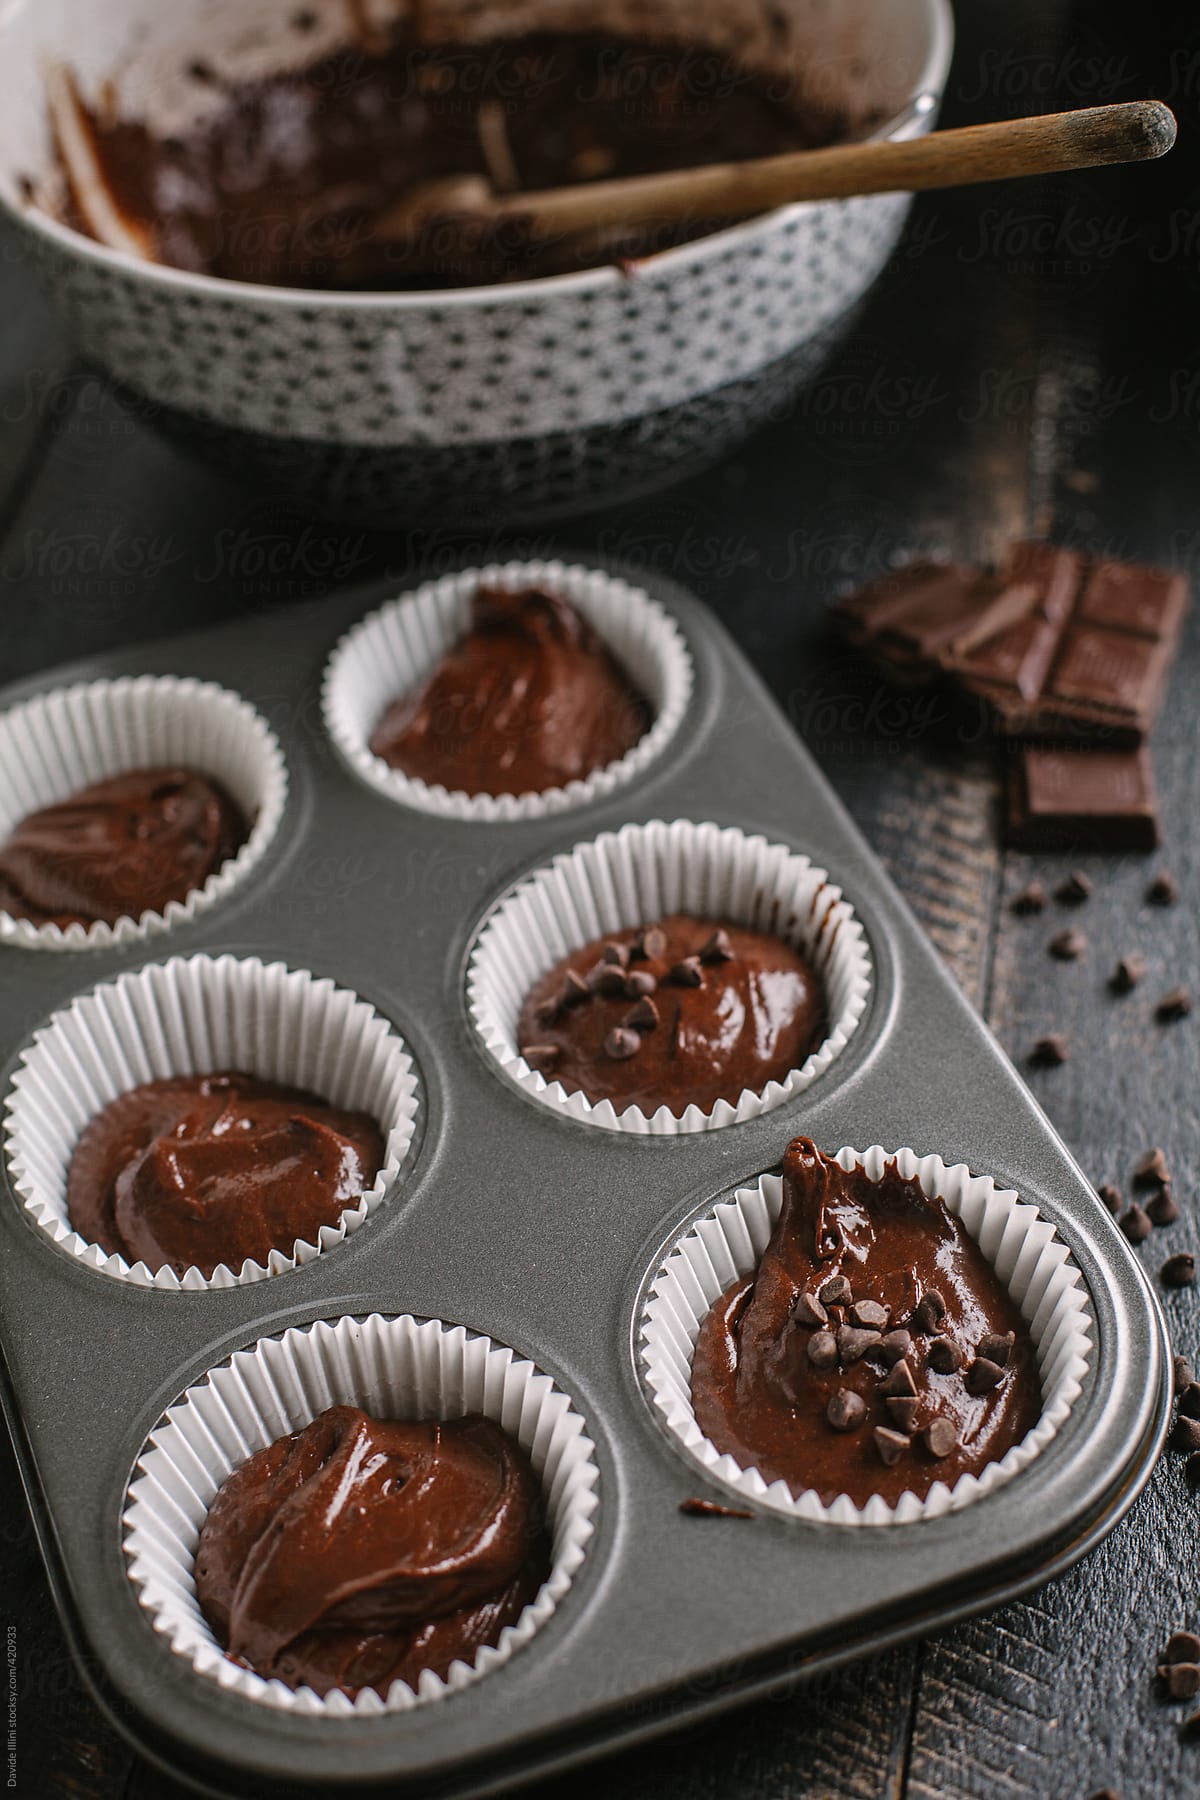 Preparing chocolate muffin